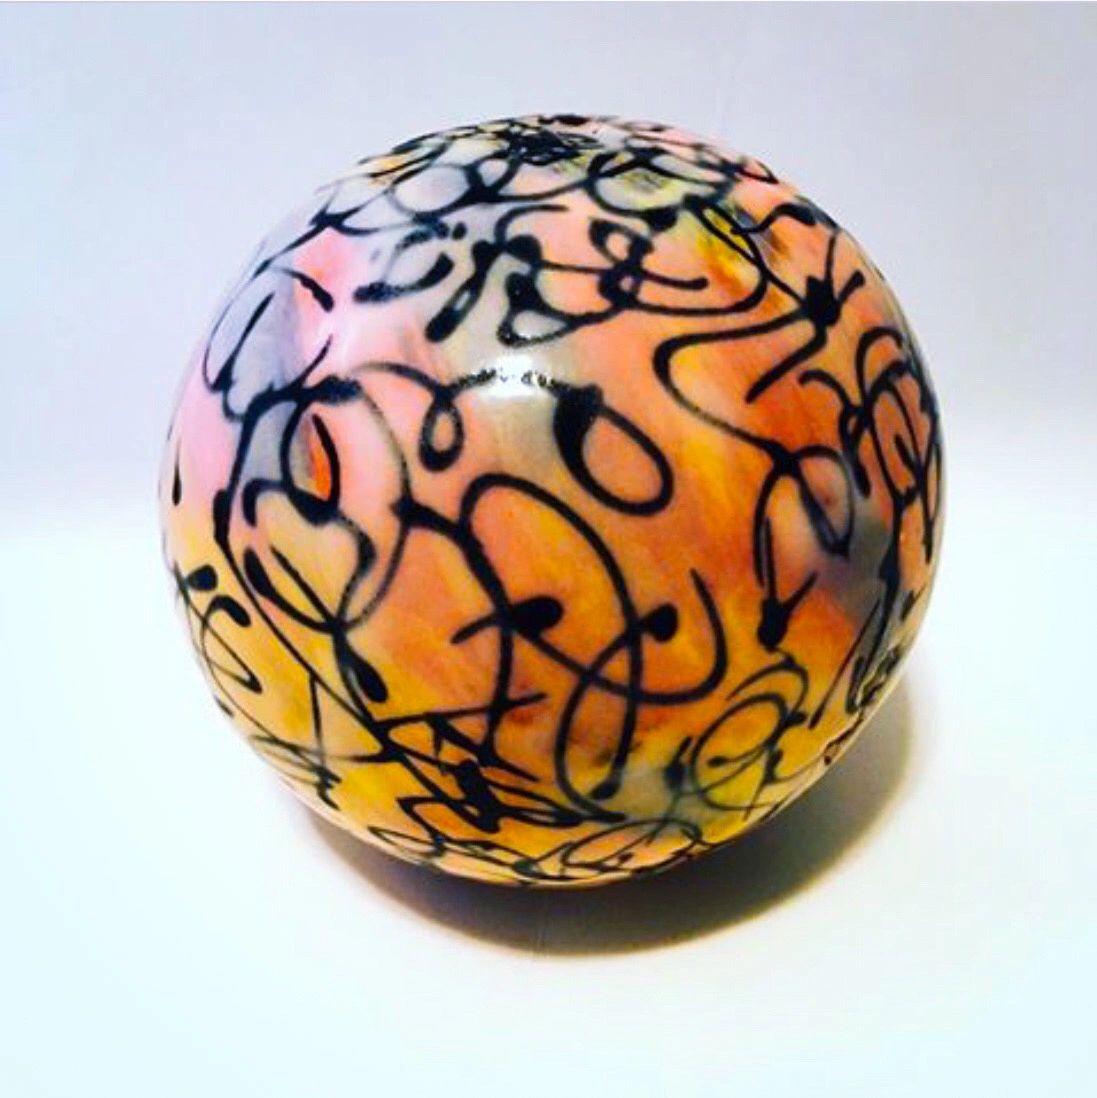 5” porcelain sphere. Glazed. 2018. 